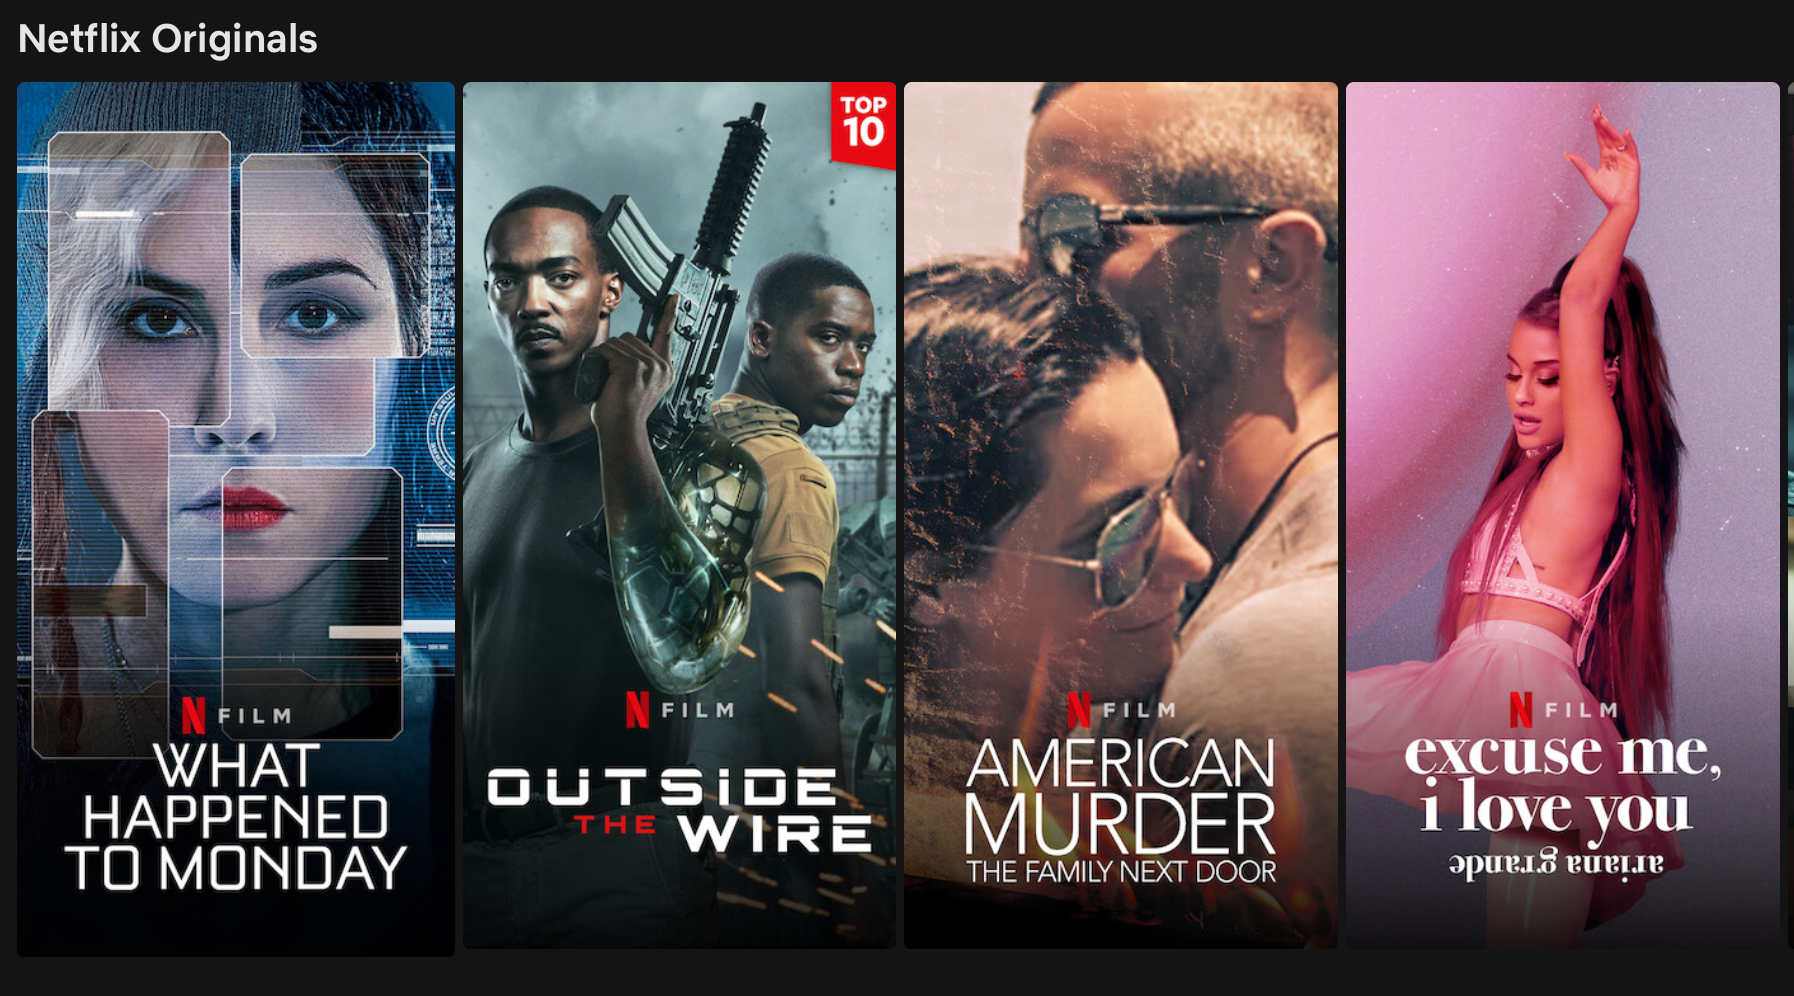 Screenshot of four Netflix originals from the Netflix home screen